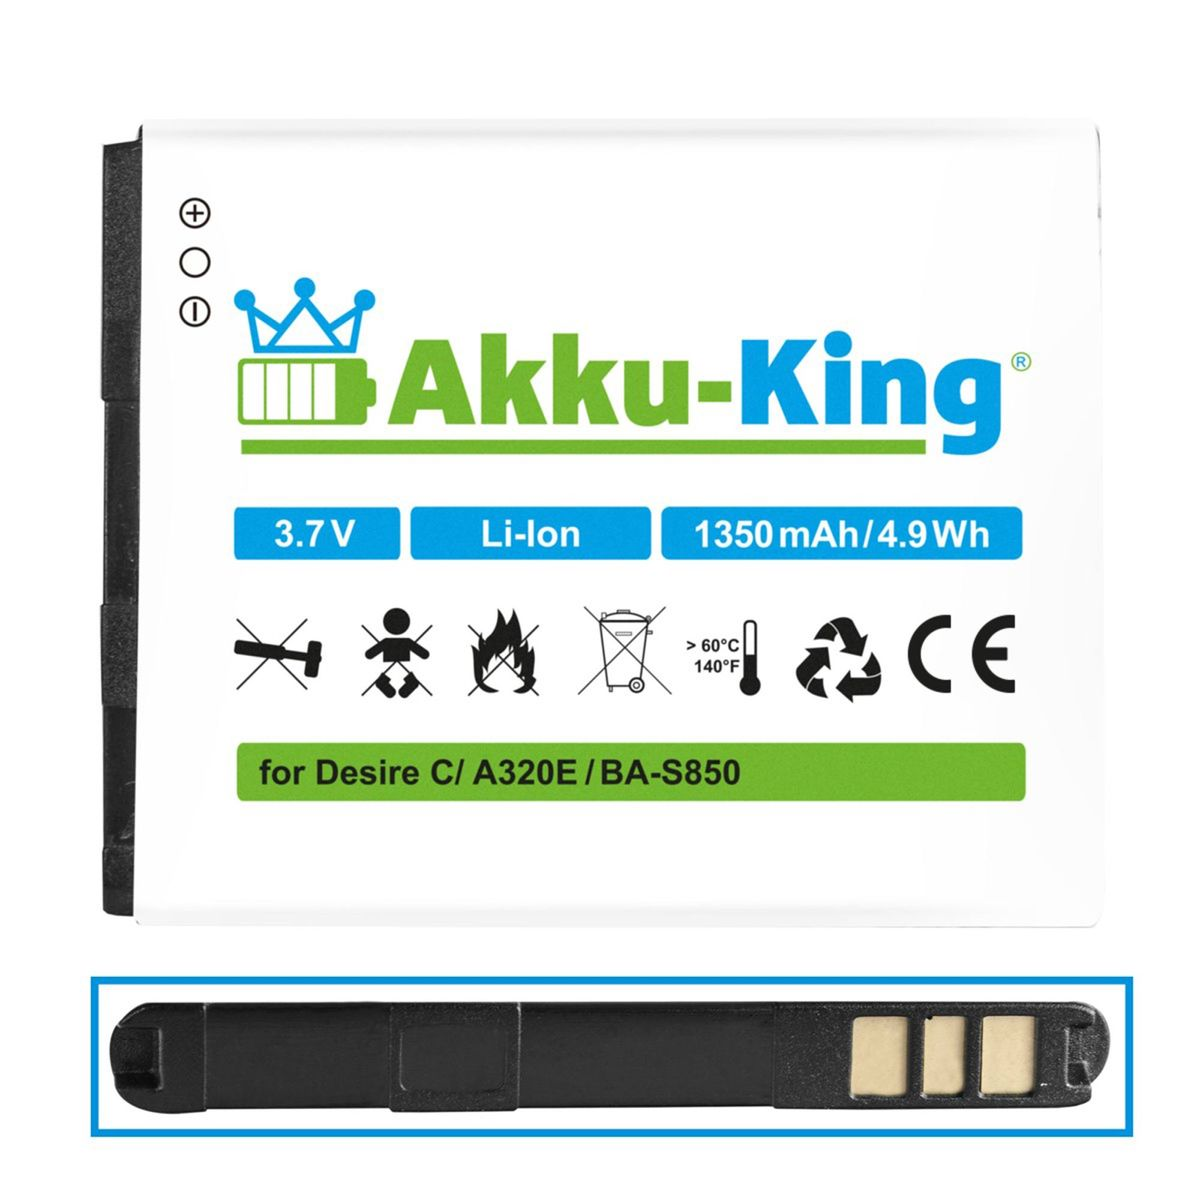 AKKU-KING Akku kompatibel mit HTC 1350mAh Li-Ion BA-S850 Handy-Akku, 3.7 Volt